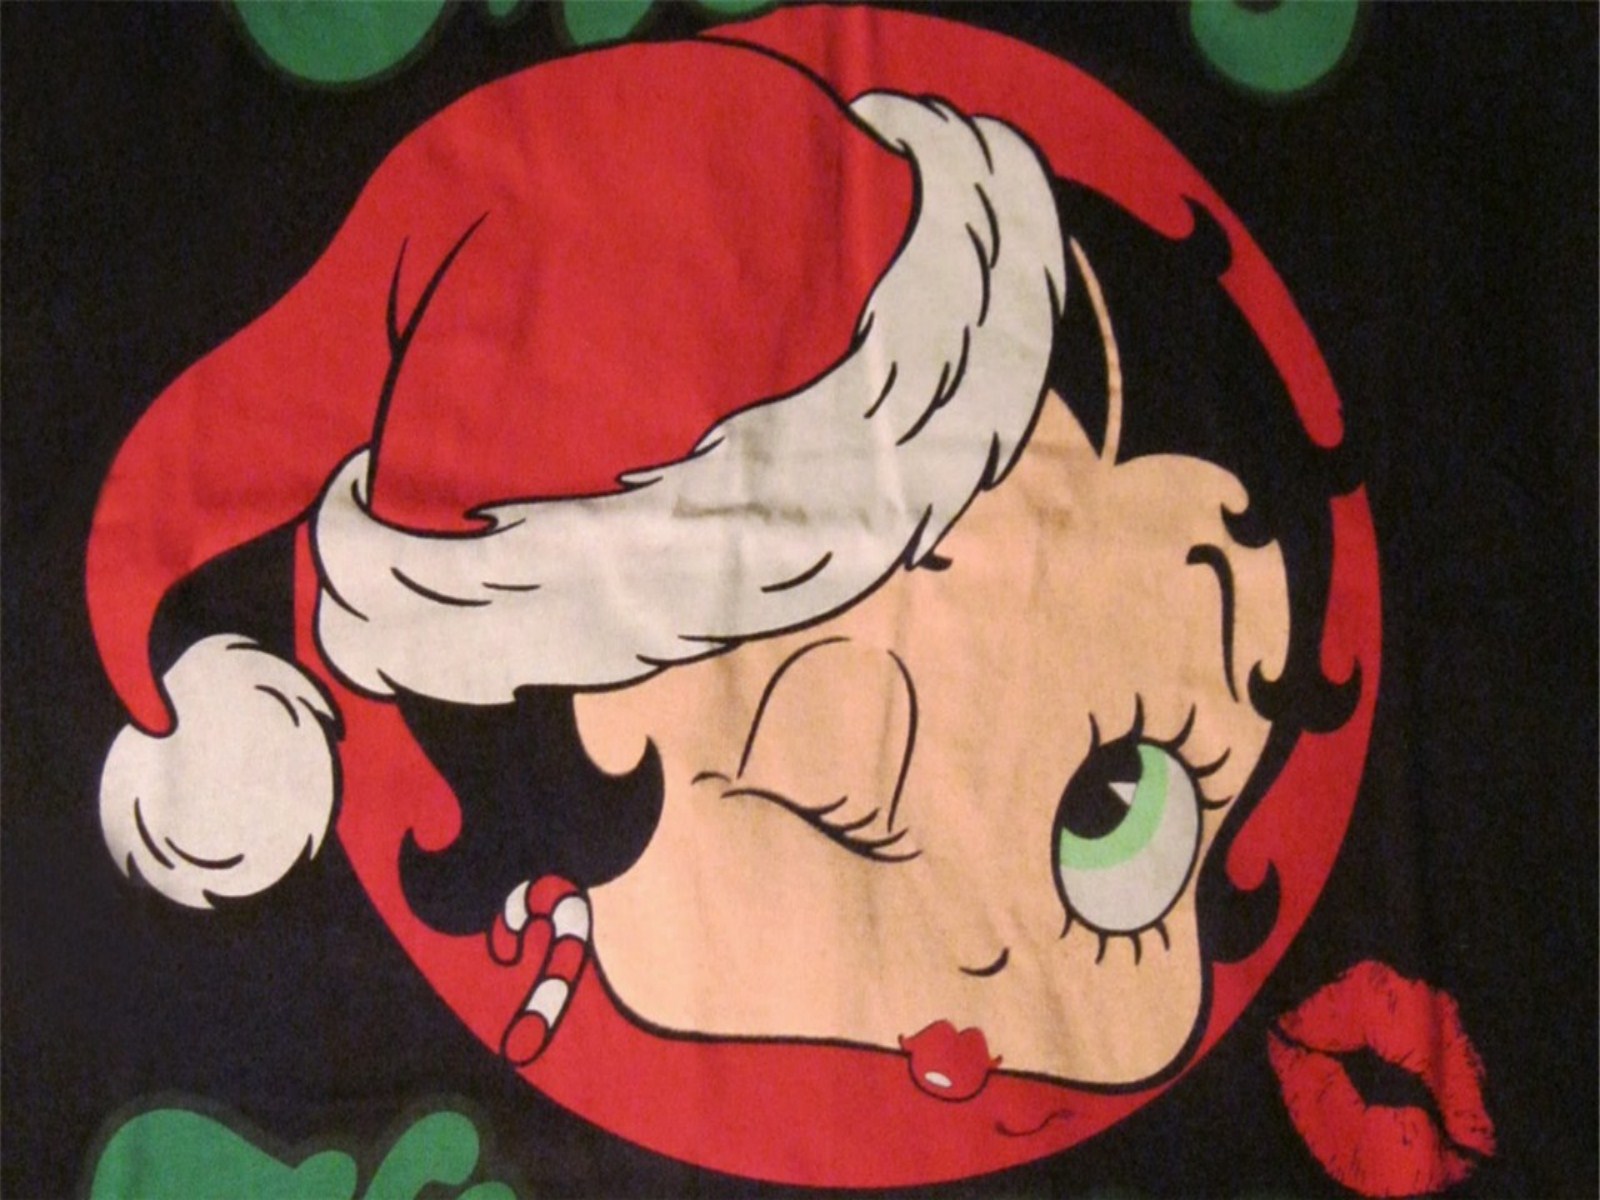 78+] Betty Boop Wallpaper For Phone - WallpaperSafari